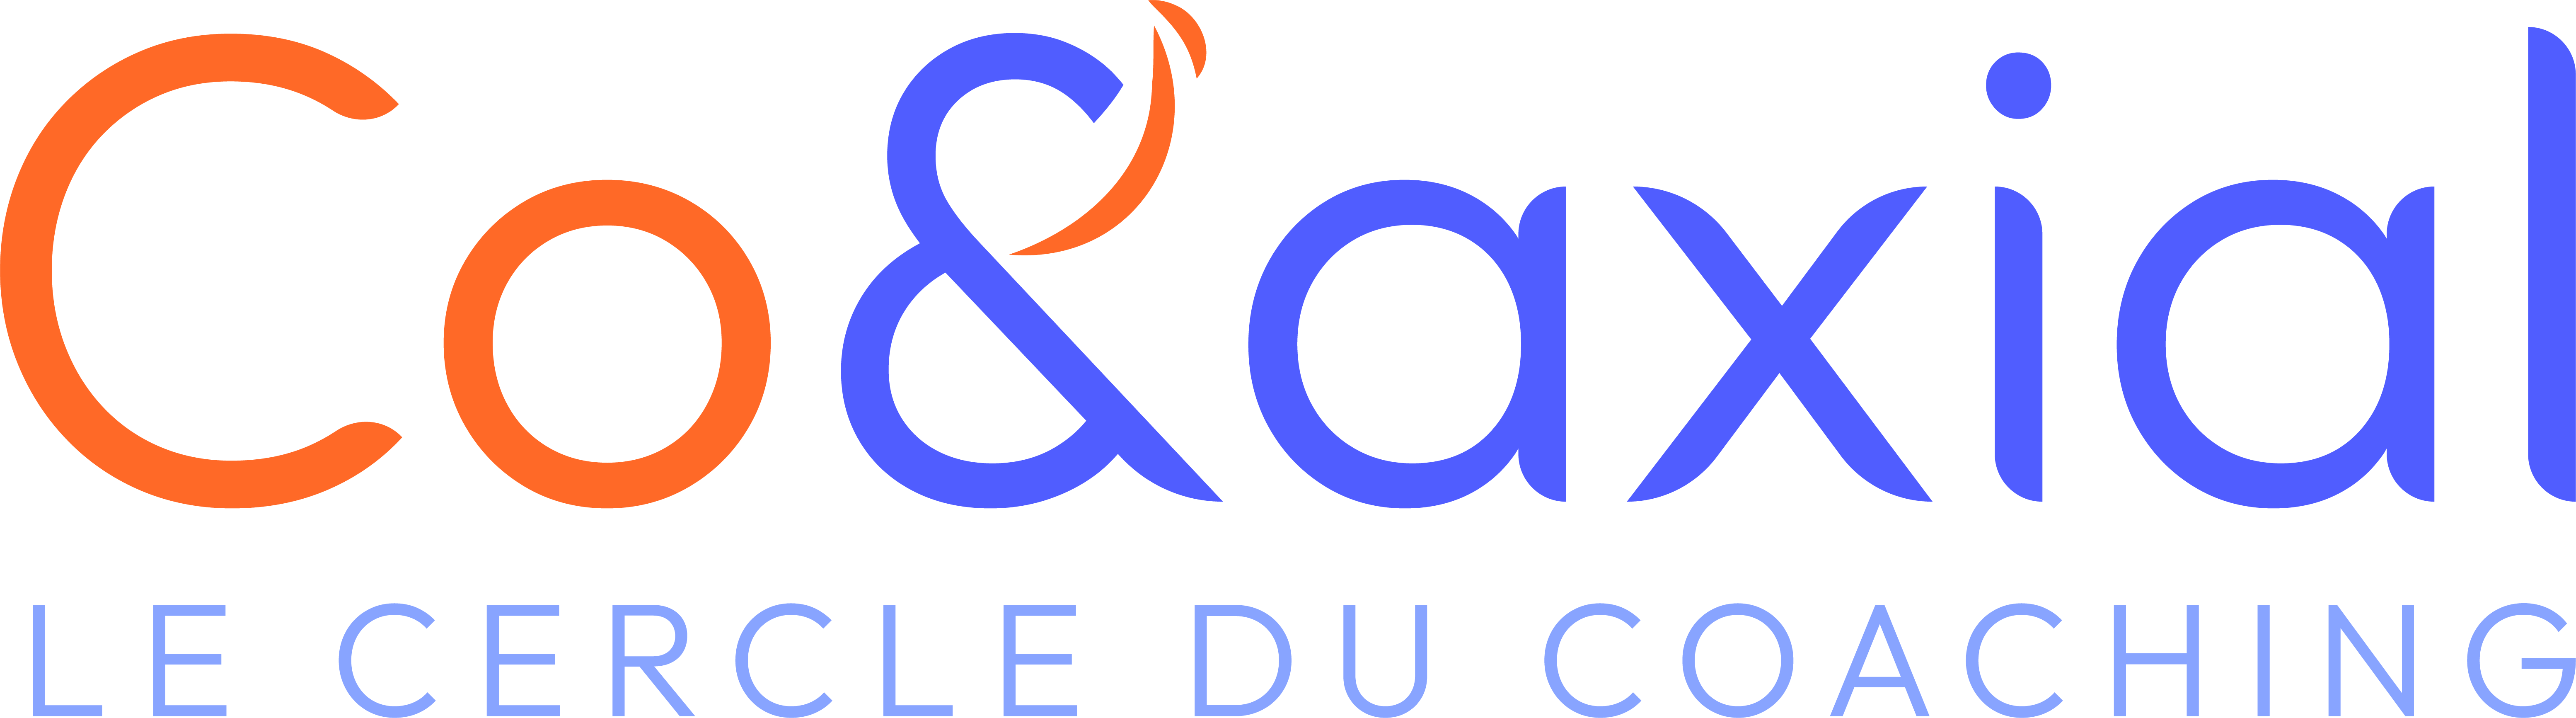 Co&axial Logo